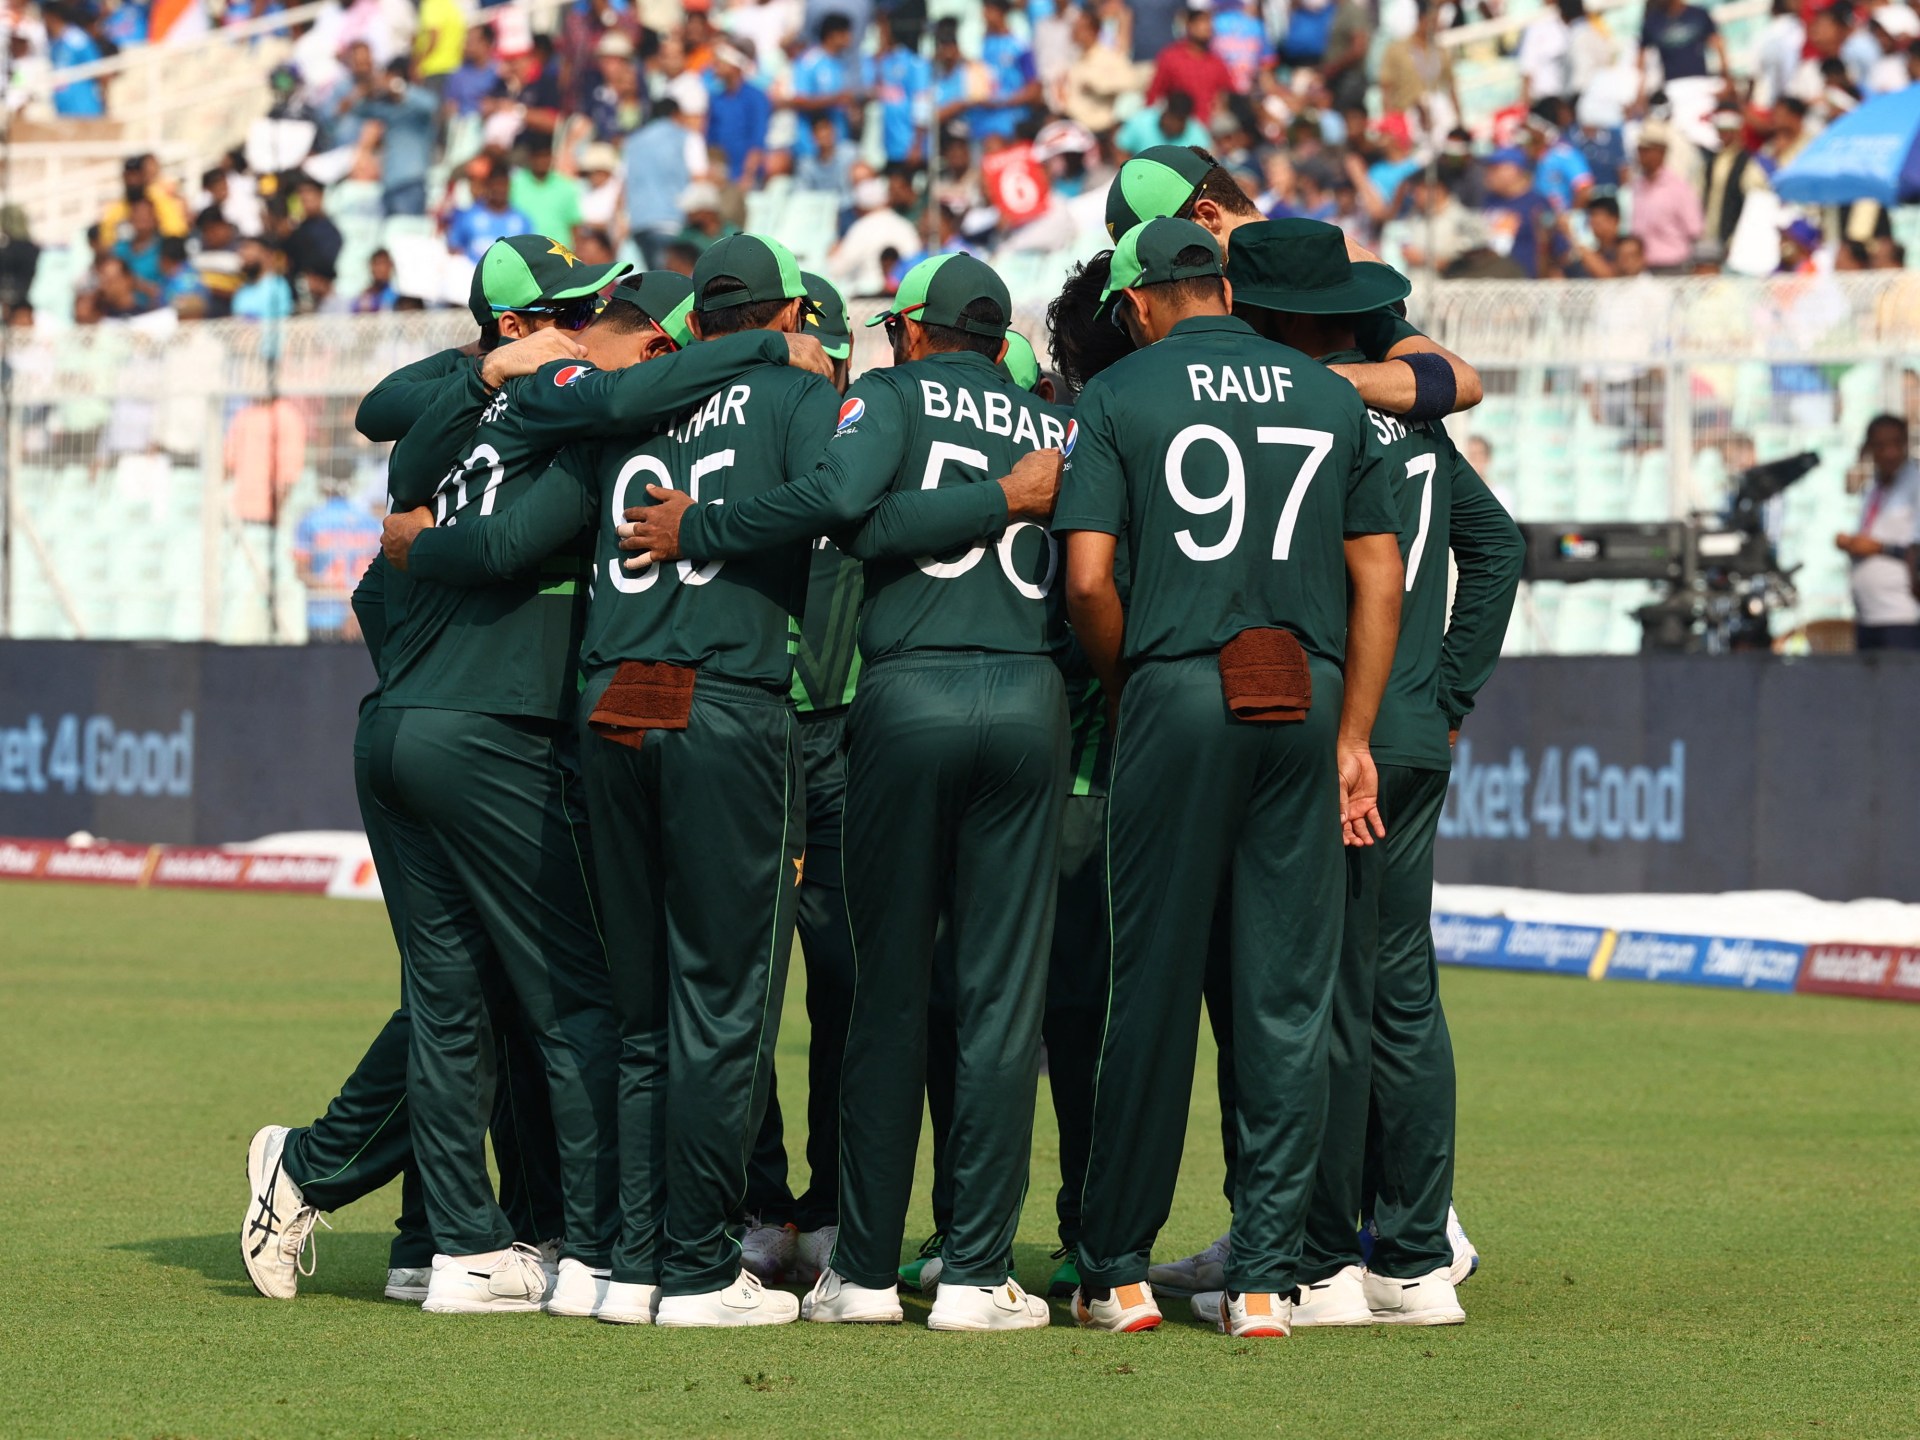 Pakistan Cricket Board mianuje Gillespiego i Kirsten na głównych trenerów mężczyzn |  Wiadomości krykieta